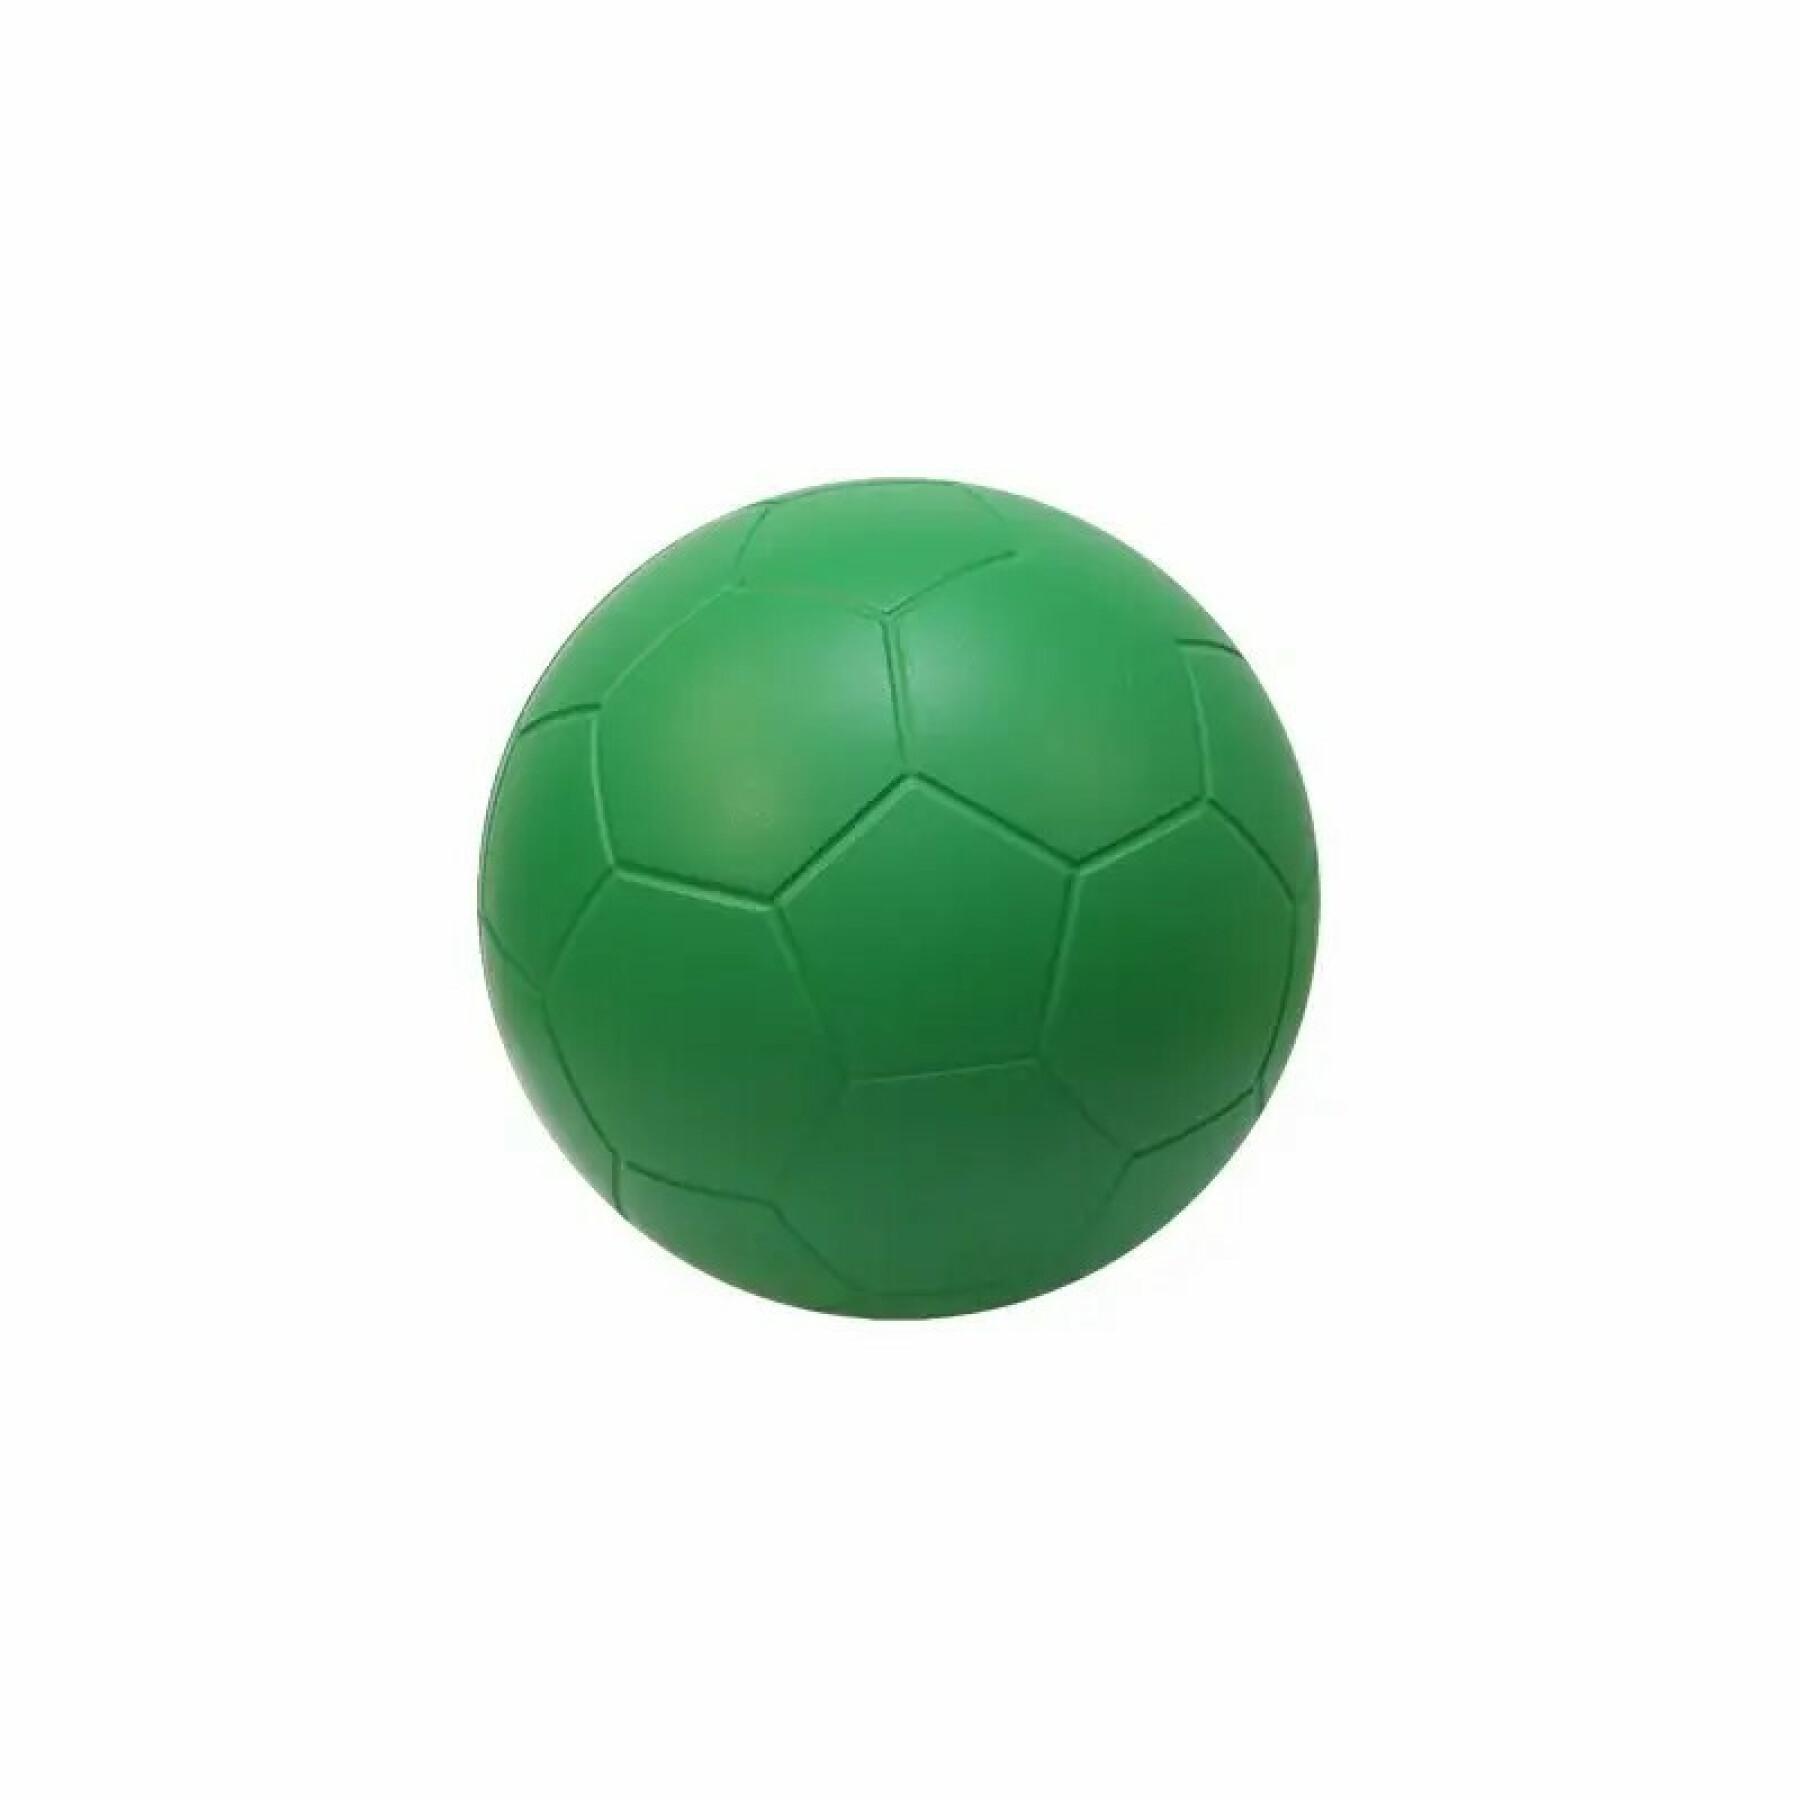 Schaumstoffball Softee 95 mm